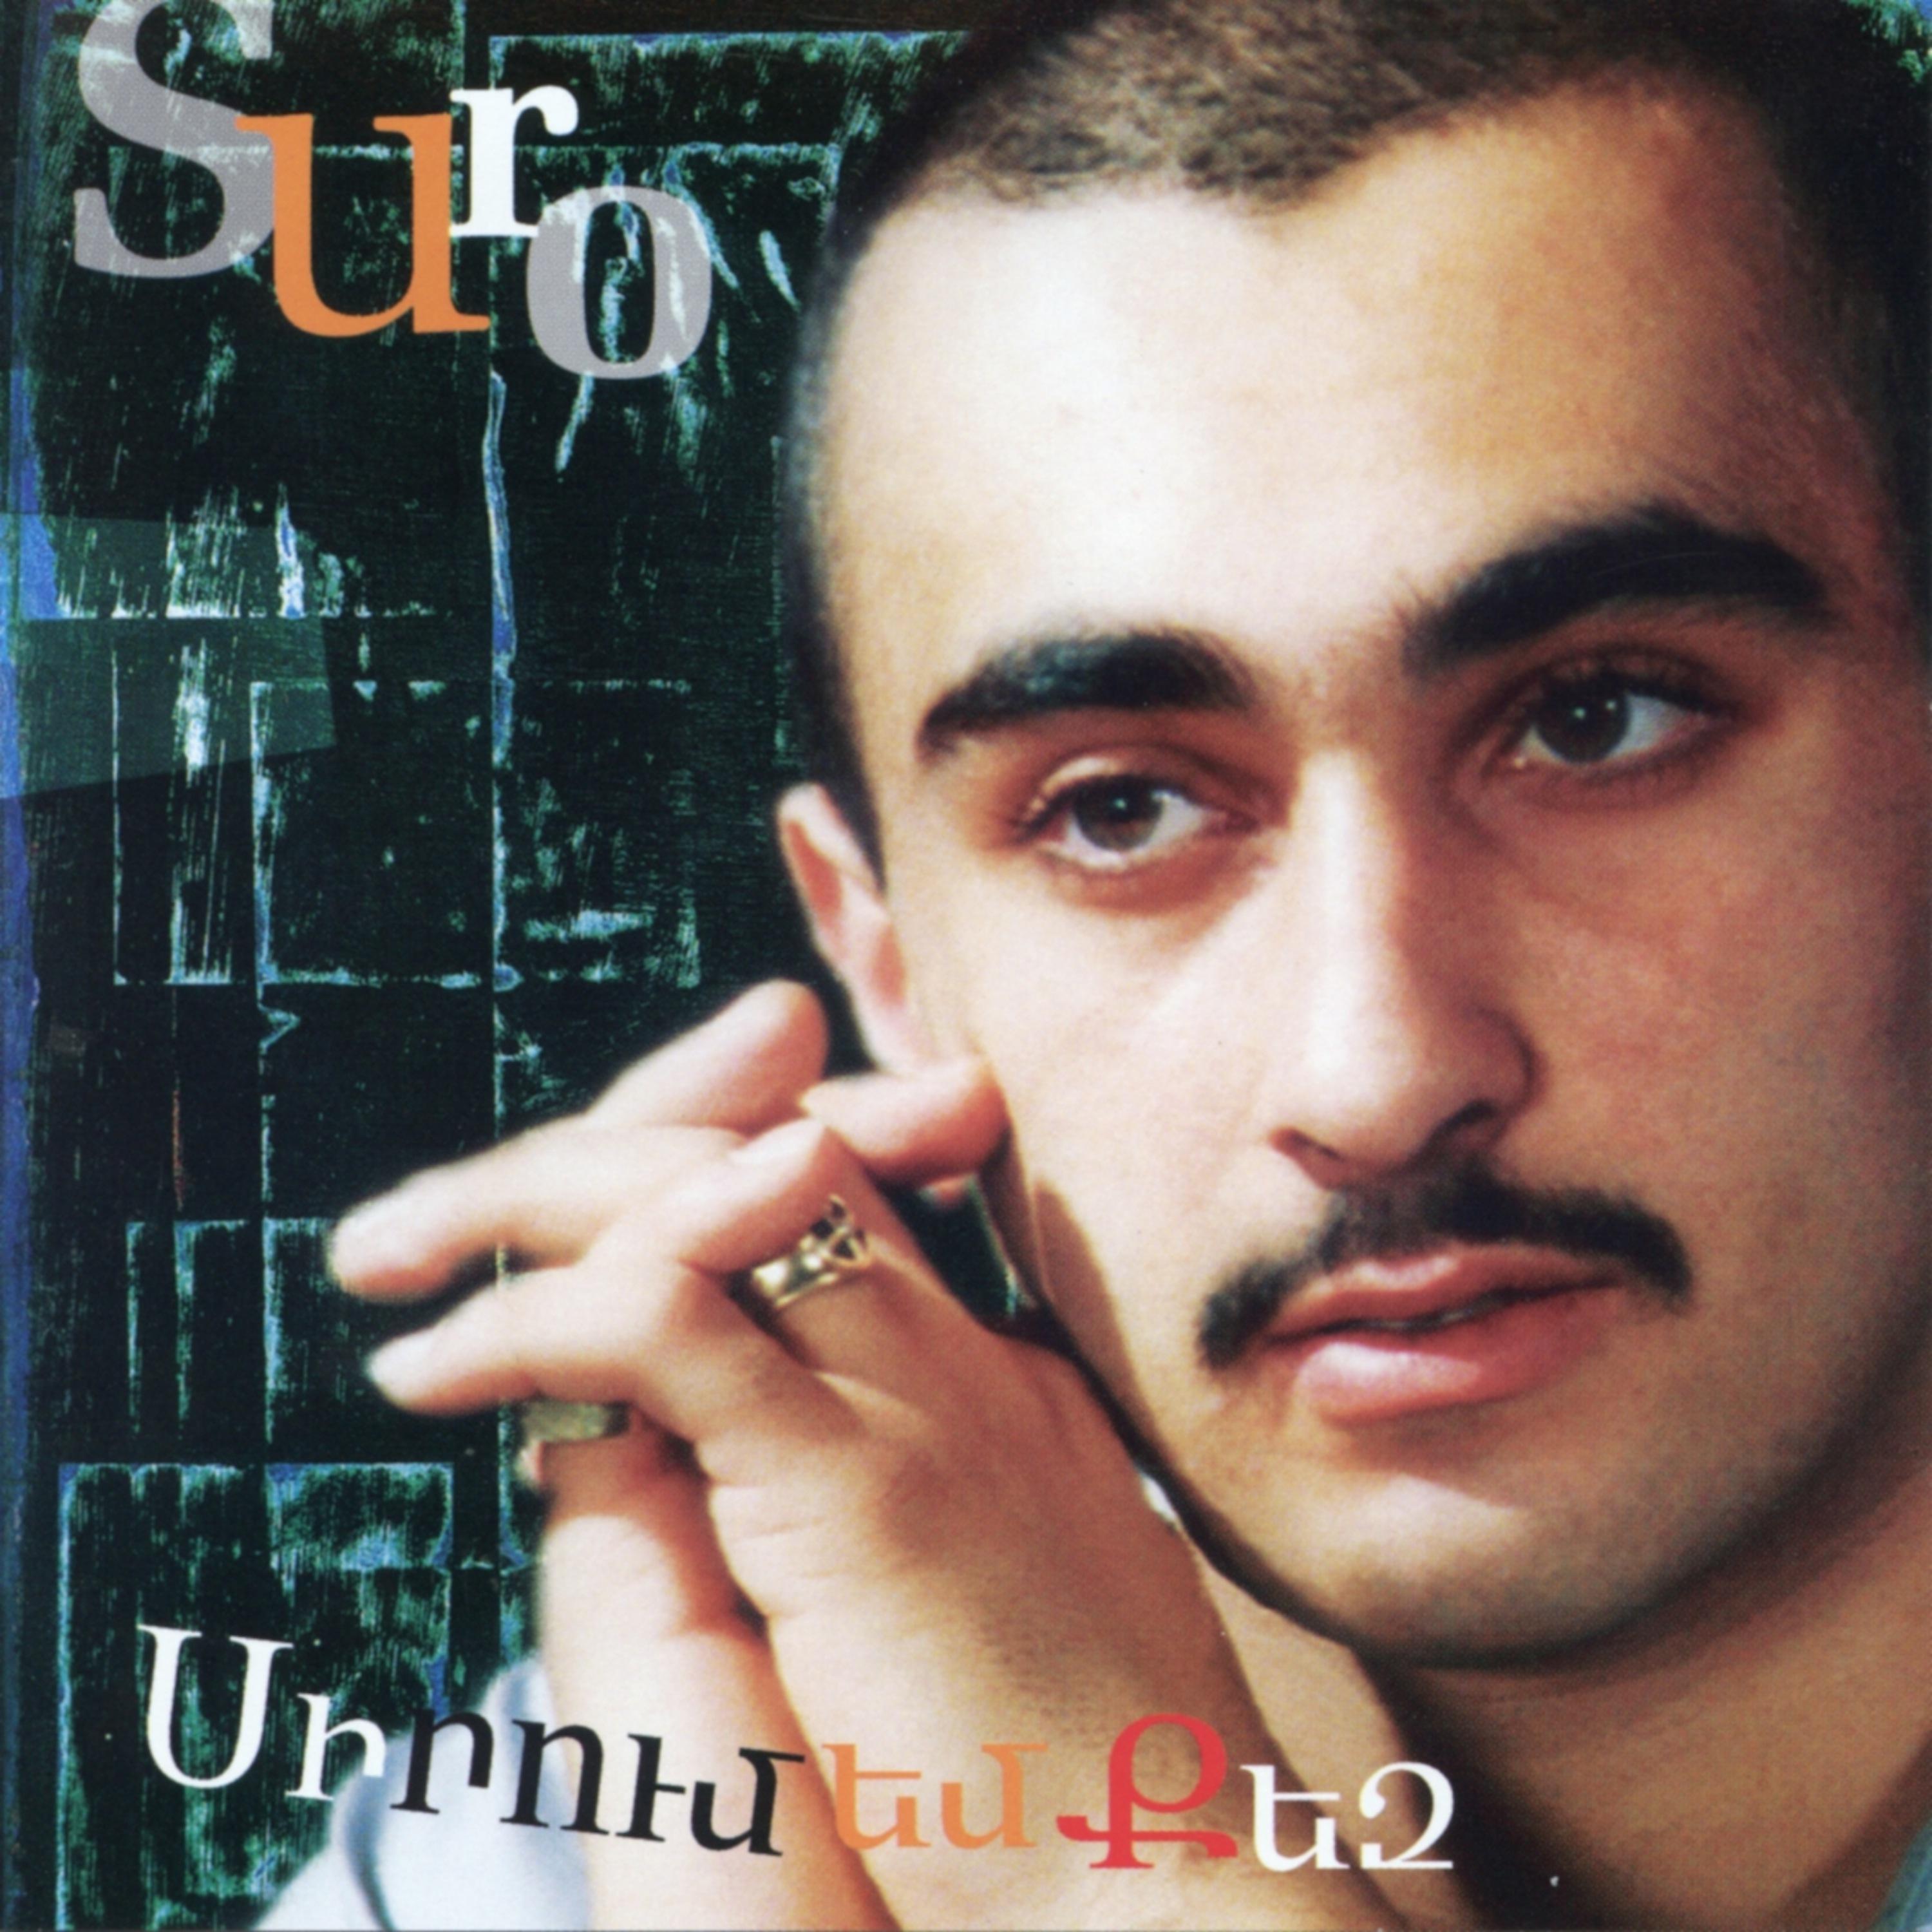 Постер альбома Sirum Em Qez